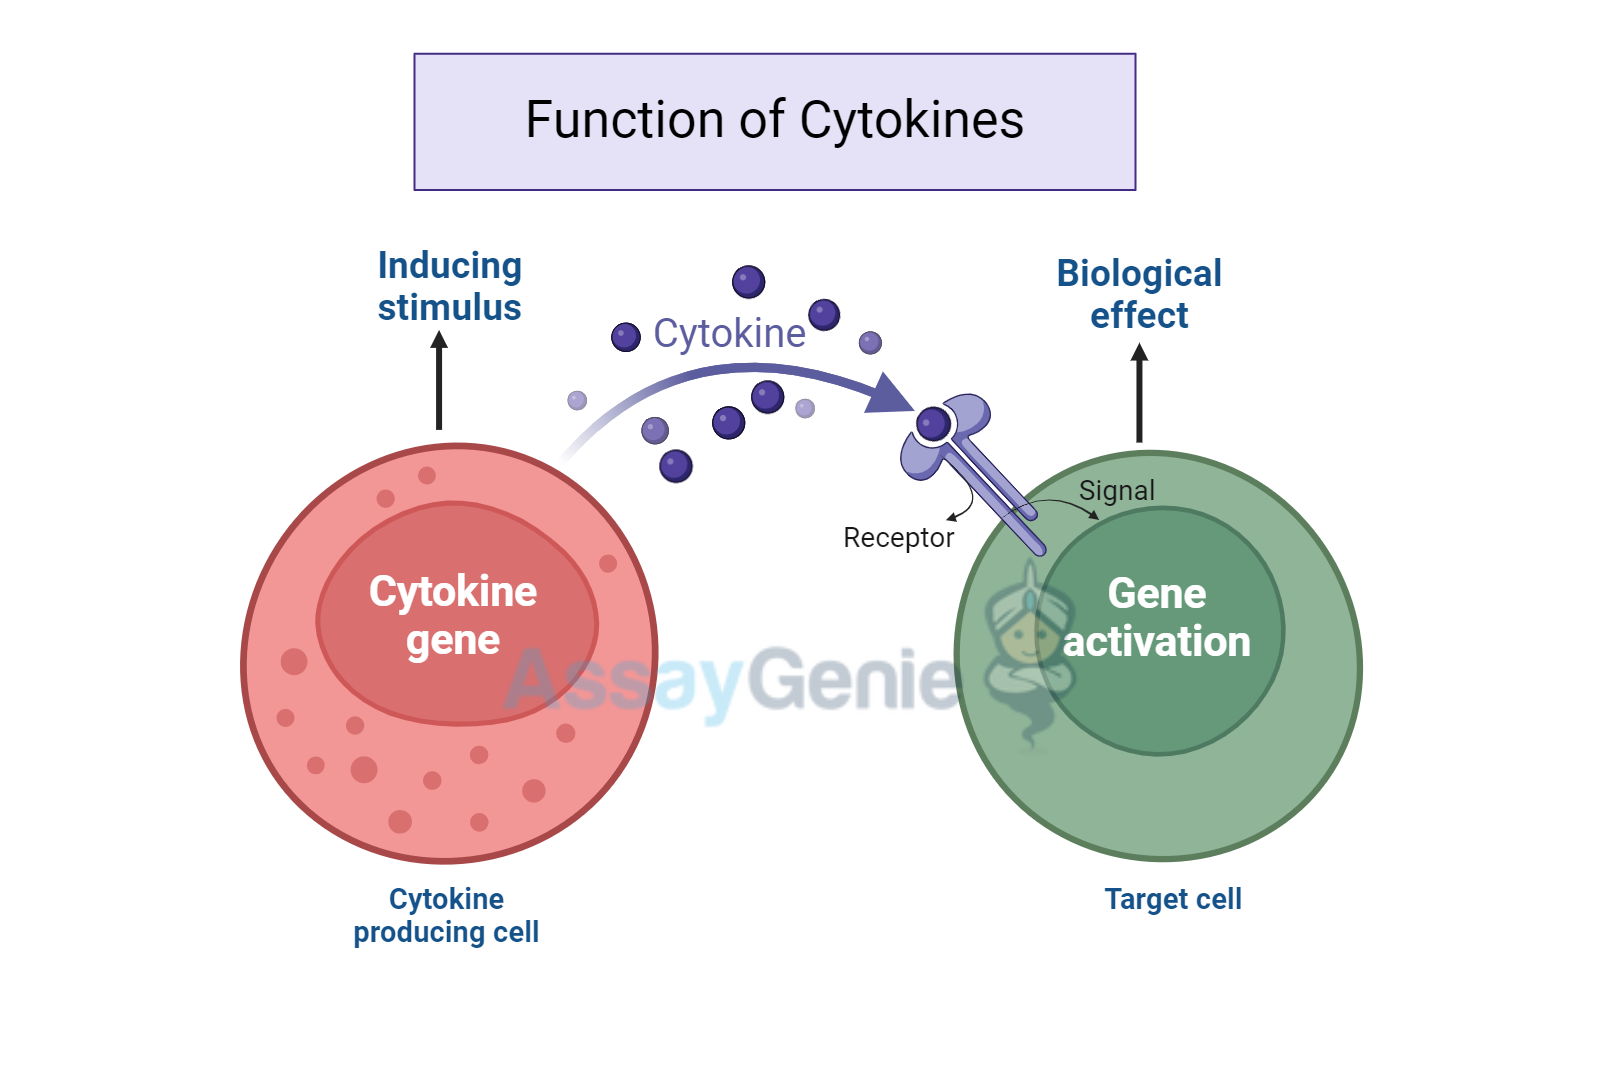 Functions of cytokines 